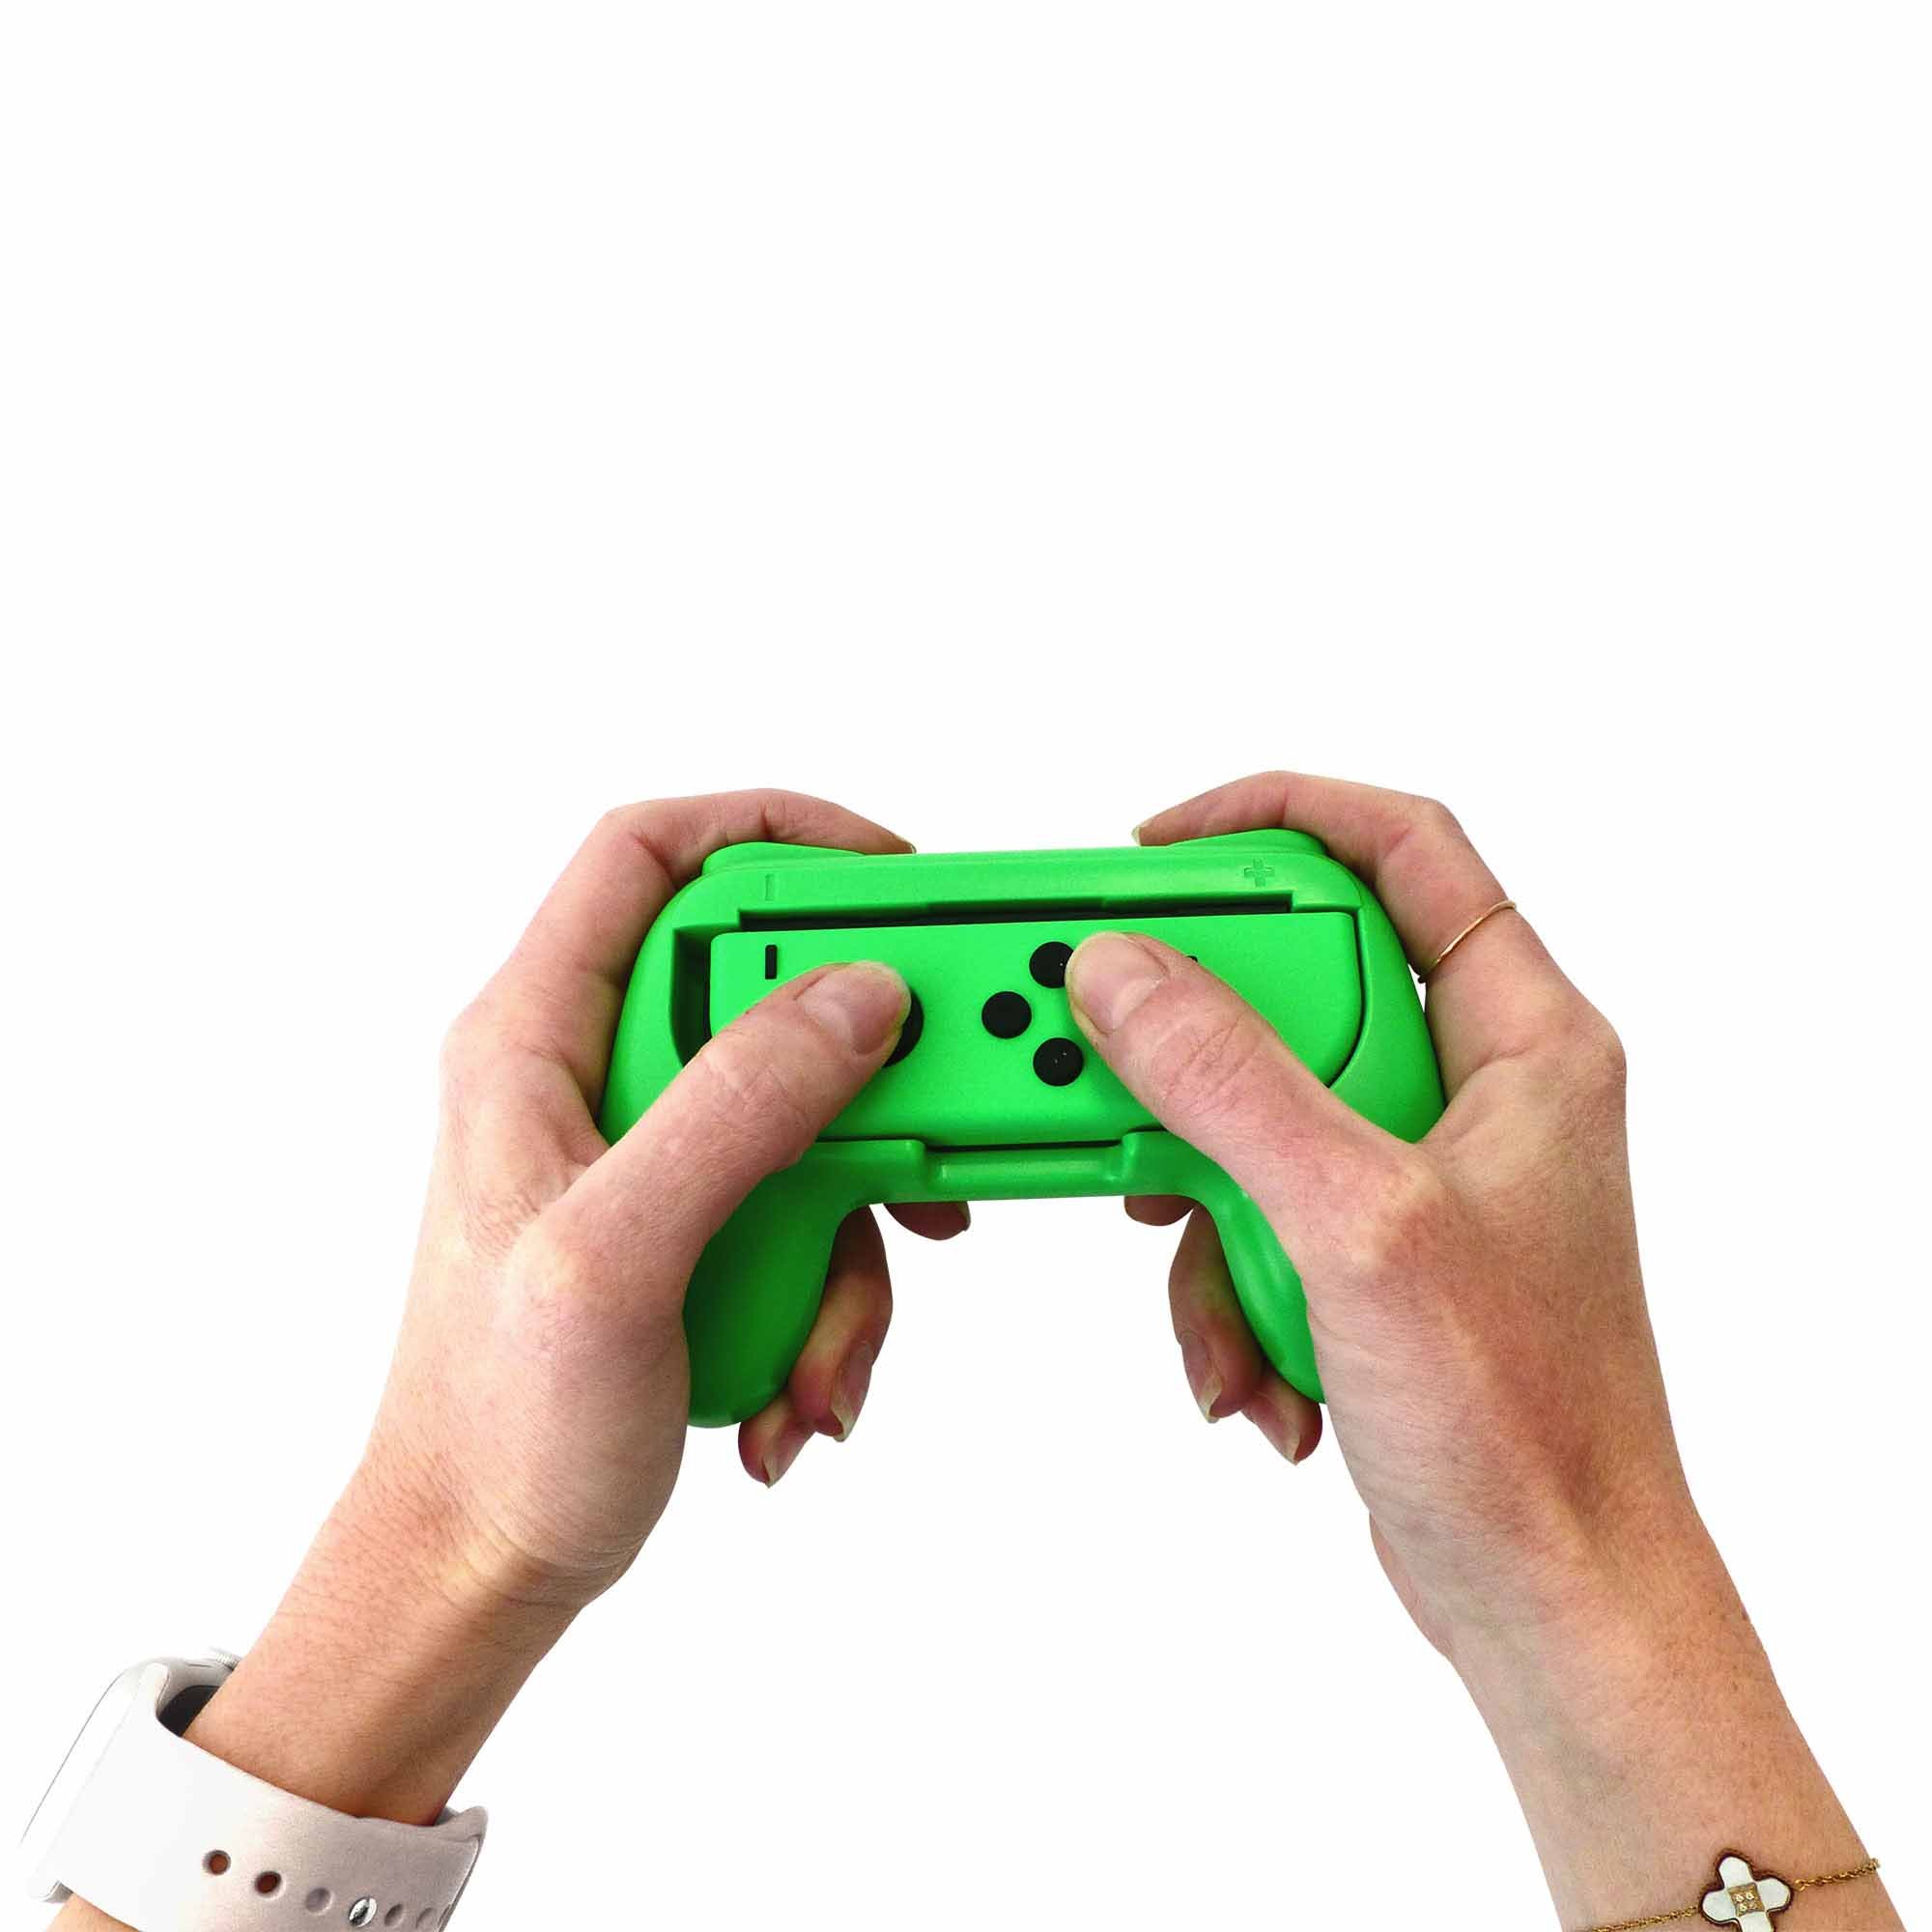 Nintendo Switch with Joy-Con Controller (Previous Model)